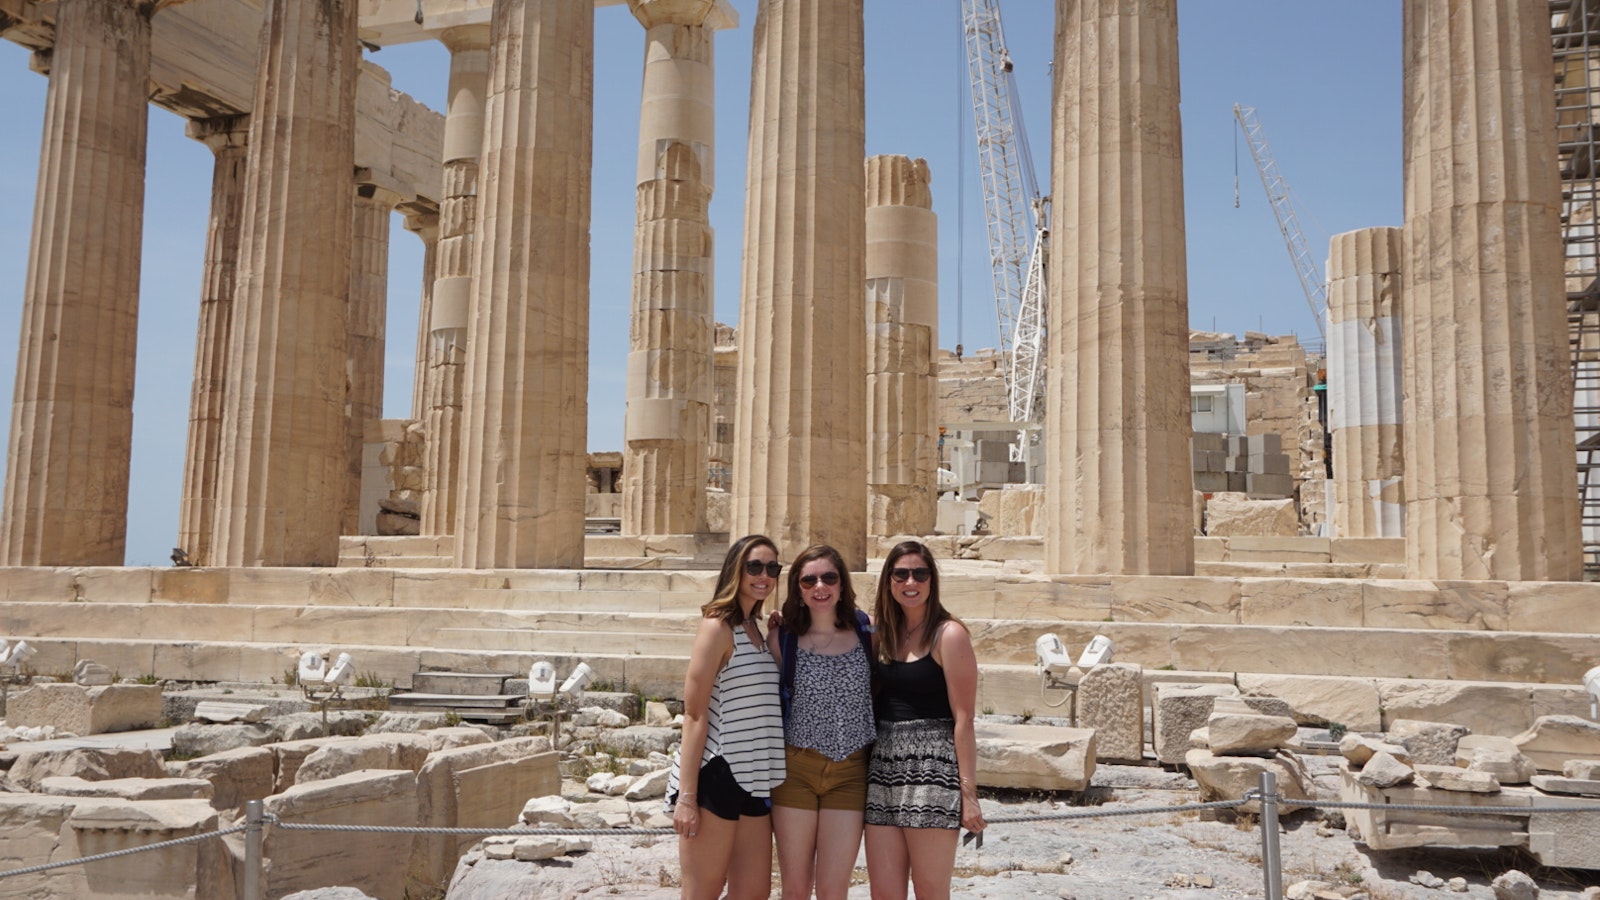 Exploring Greece